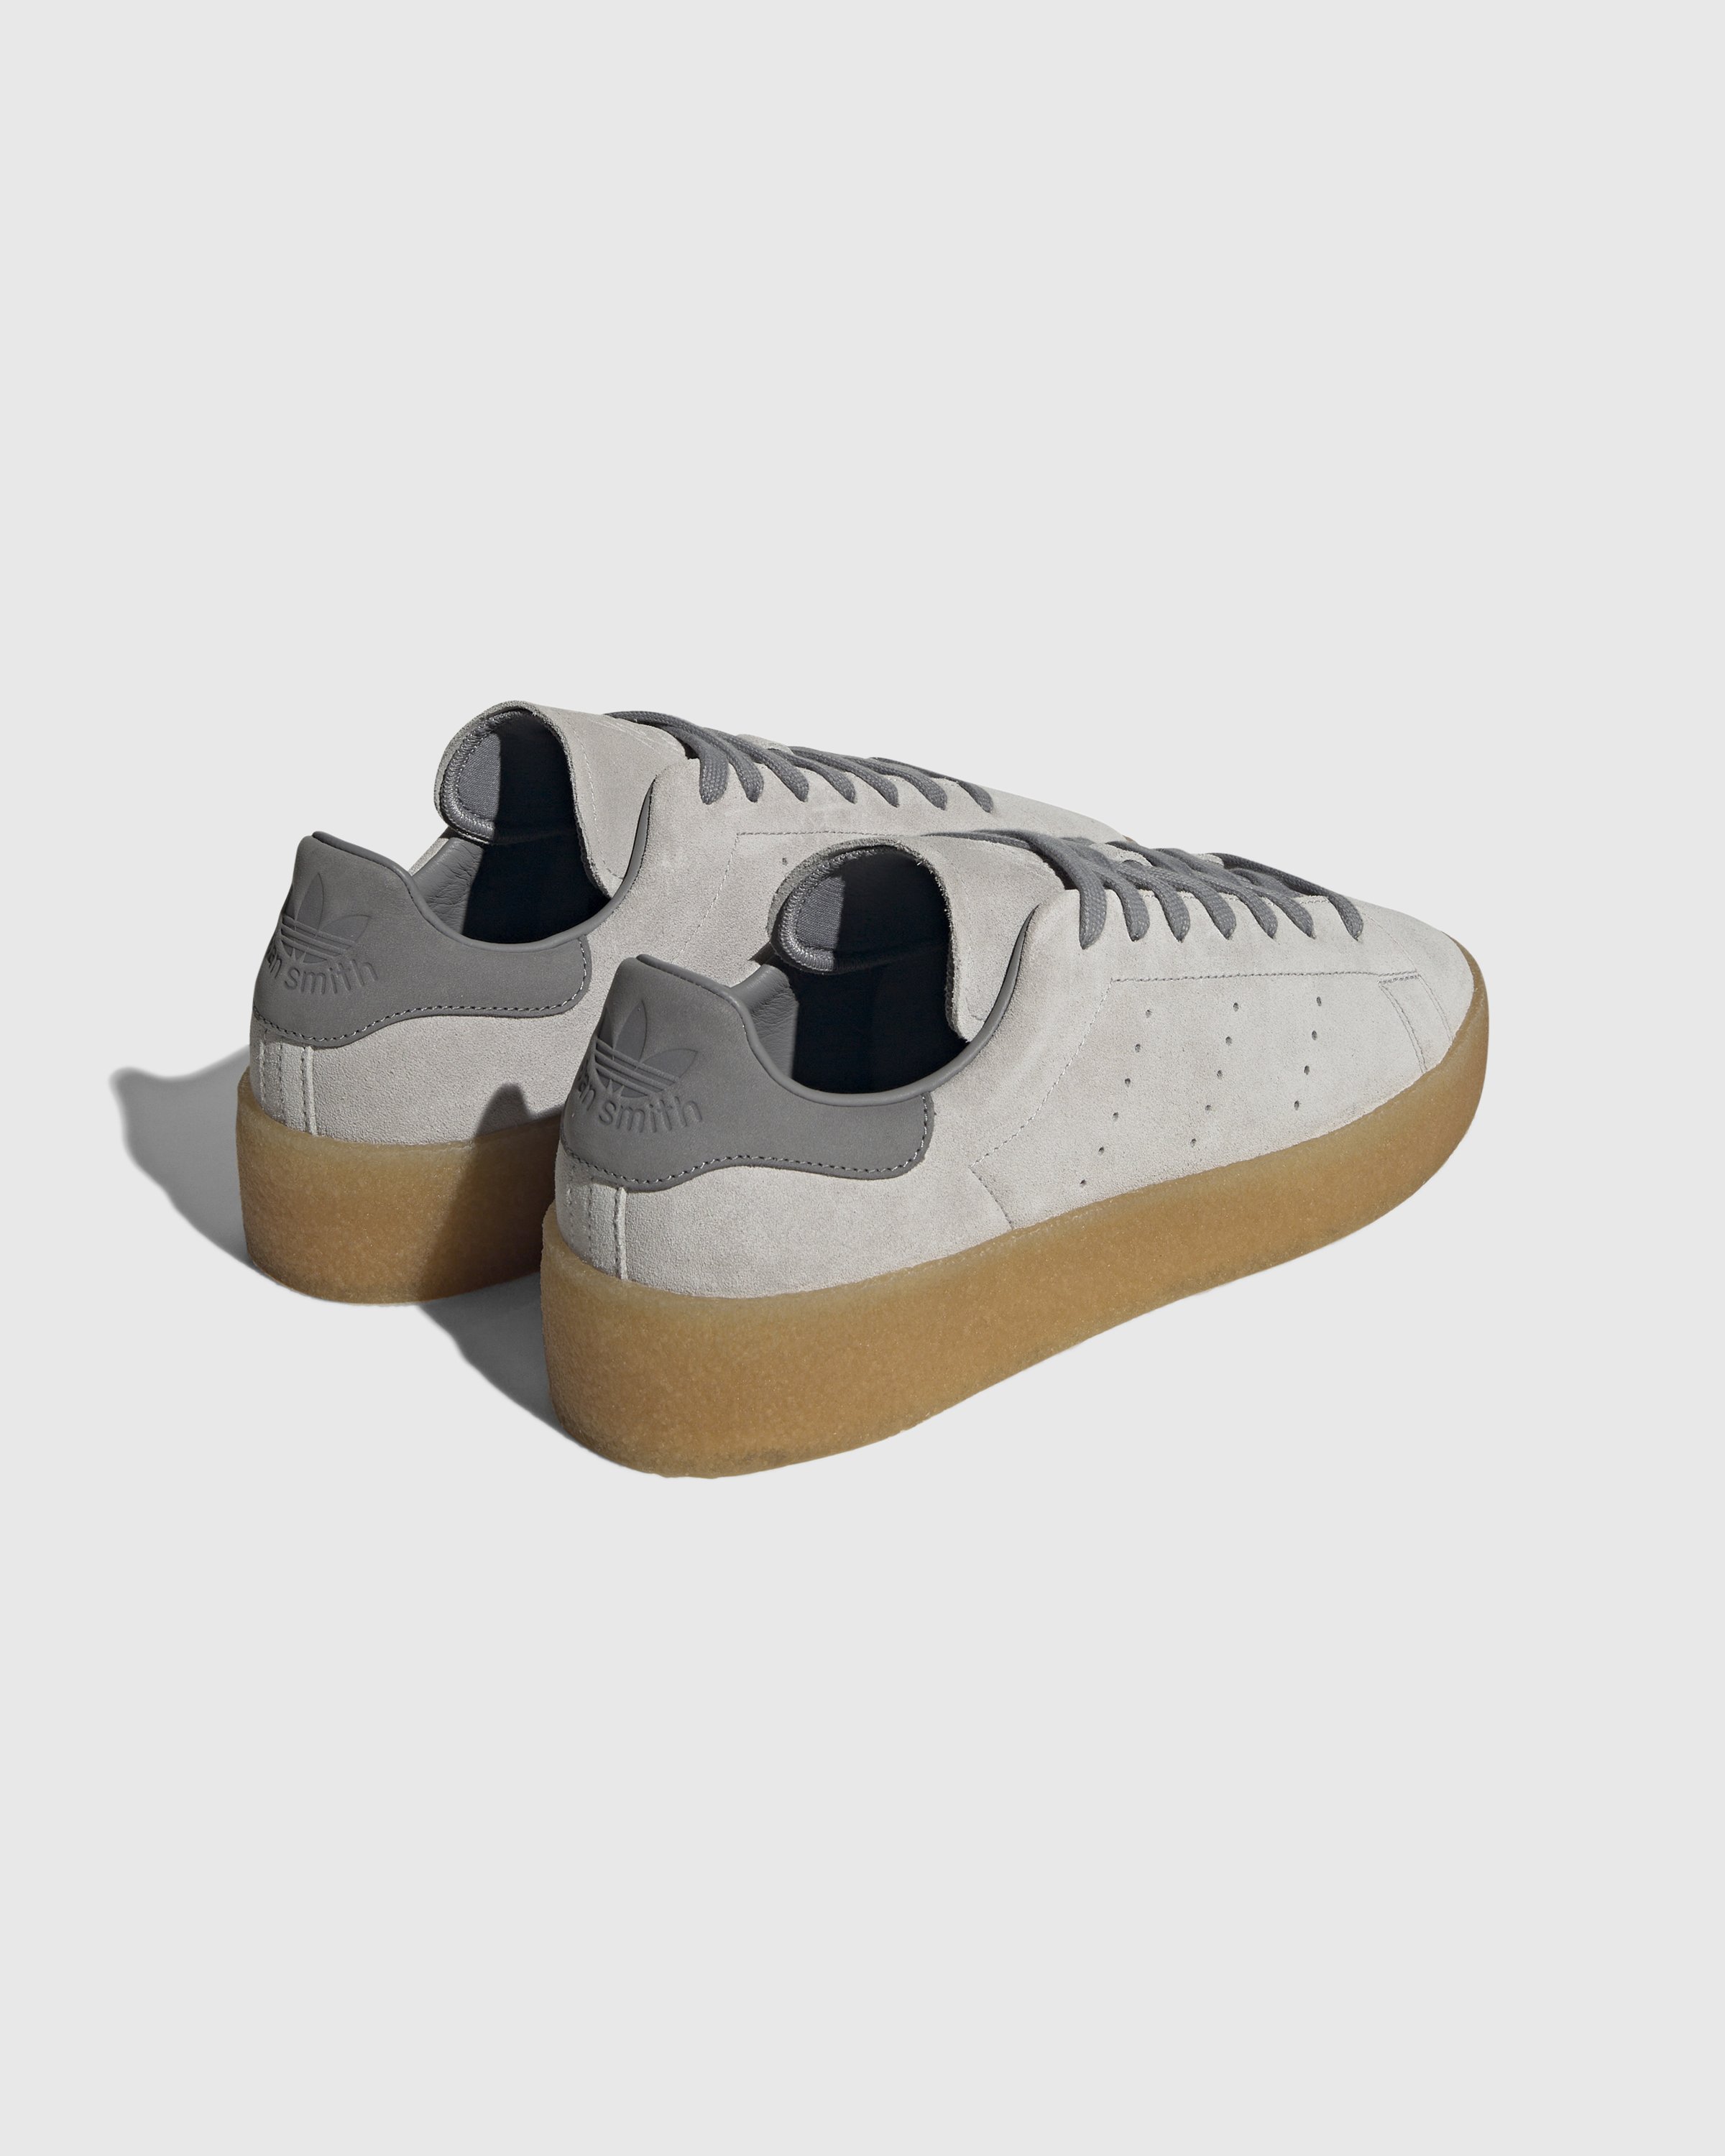 Adidas - Stan Smith Crepe Grey - Footwear - Grey - Image 3